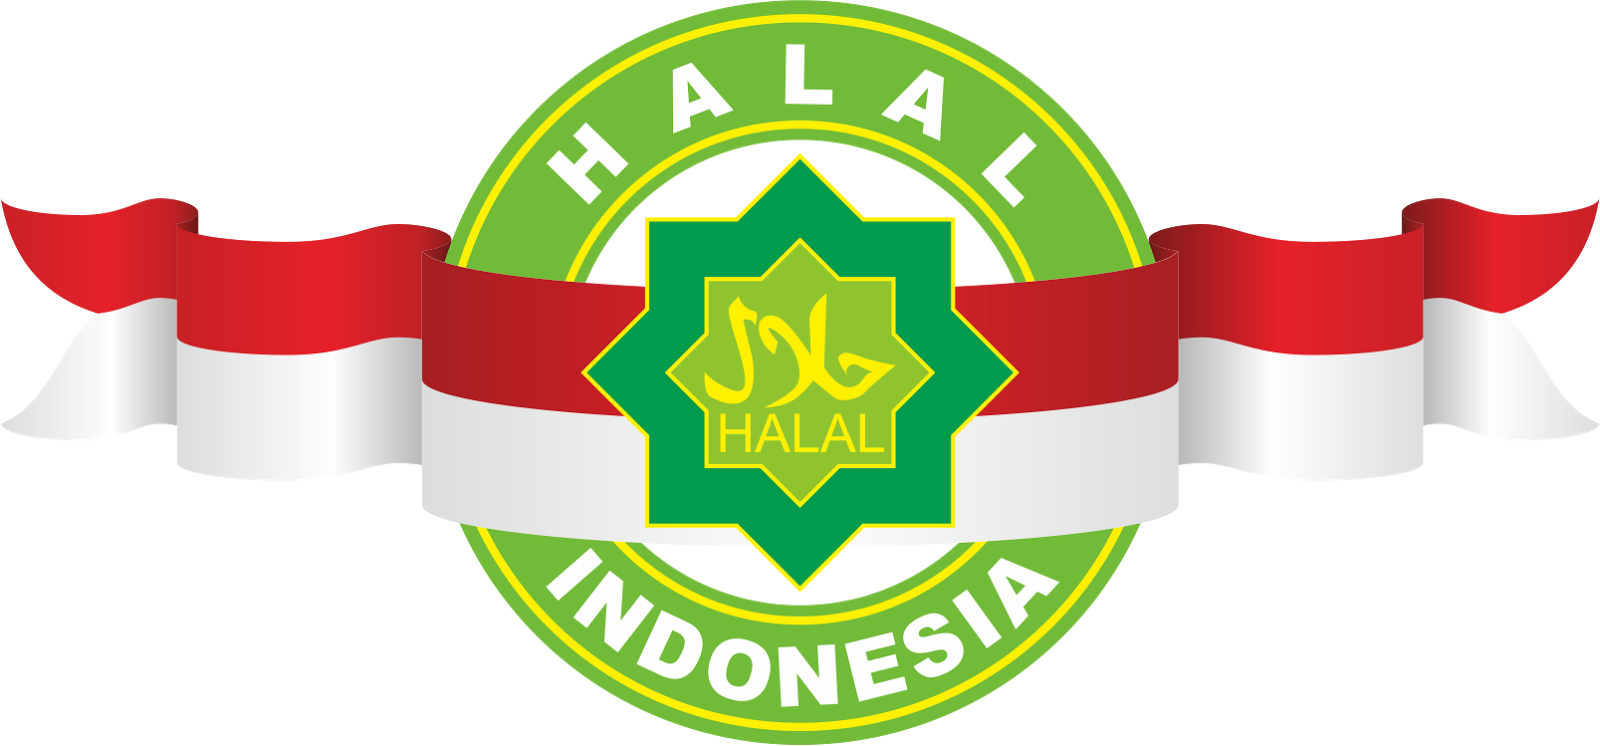 Populer Download Gambar Halal Png | Goodgambar